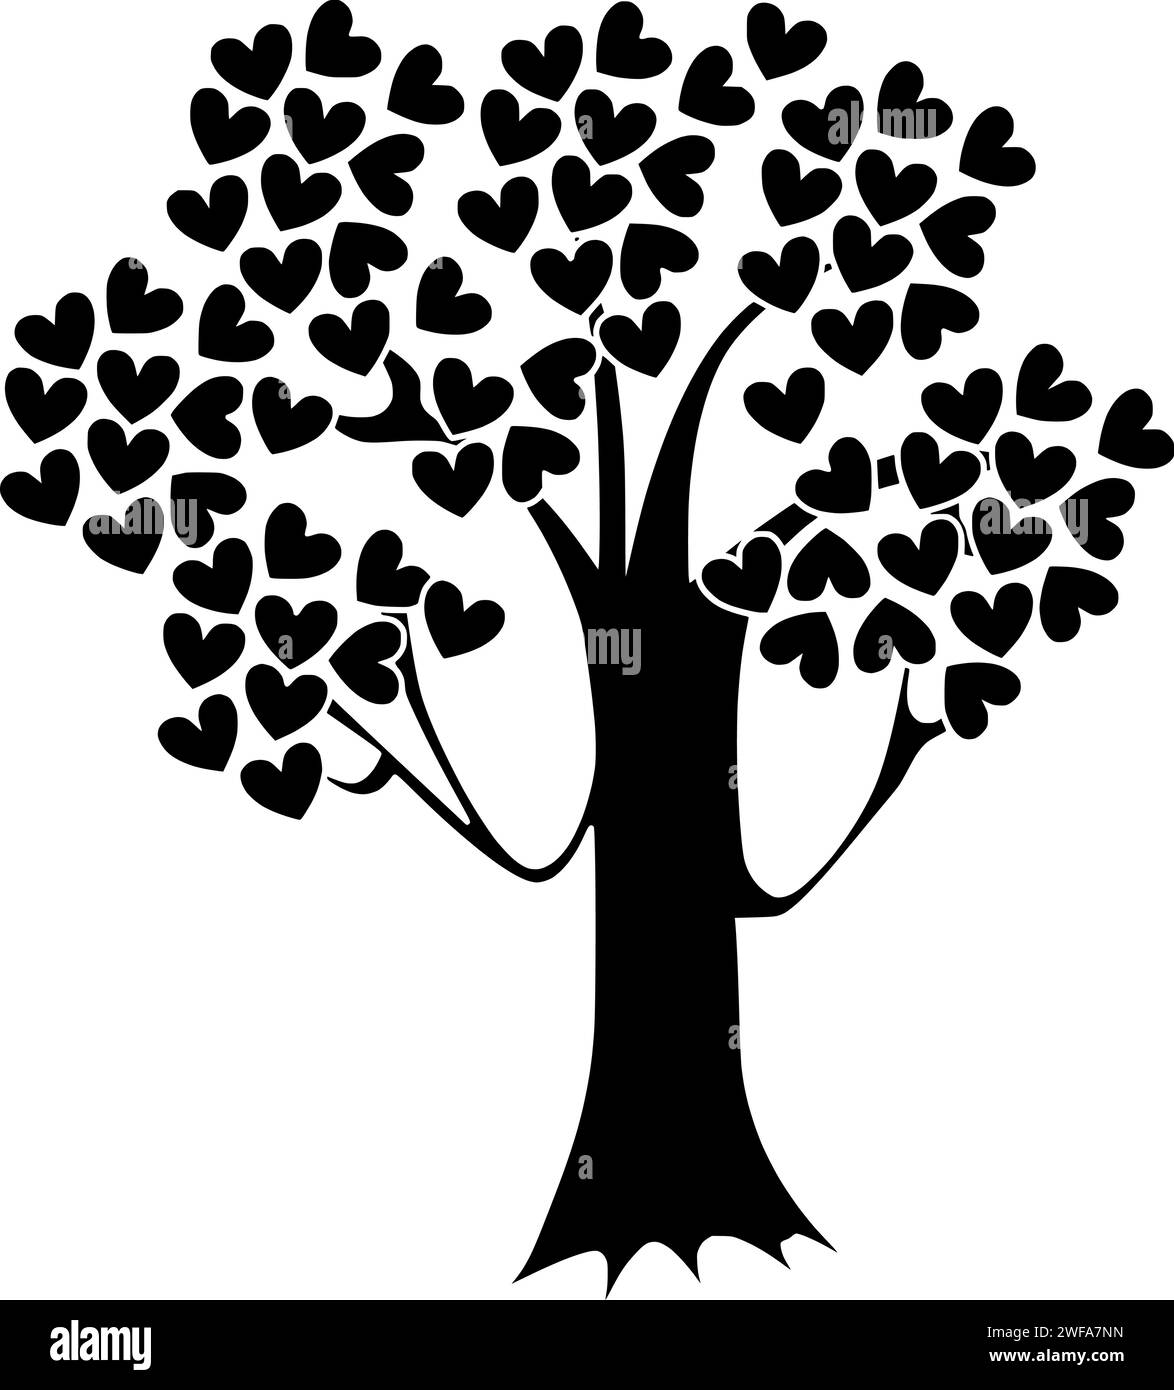 illustrazione dell'albero silhouette cuore logo natura icona amore contorno pianta san valentino ambiente verde foglia primavera giorno romantico forma tronco giardino in legno Illustrazione Vettoriale